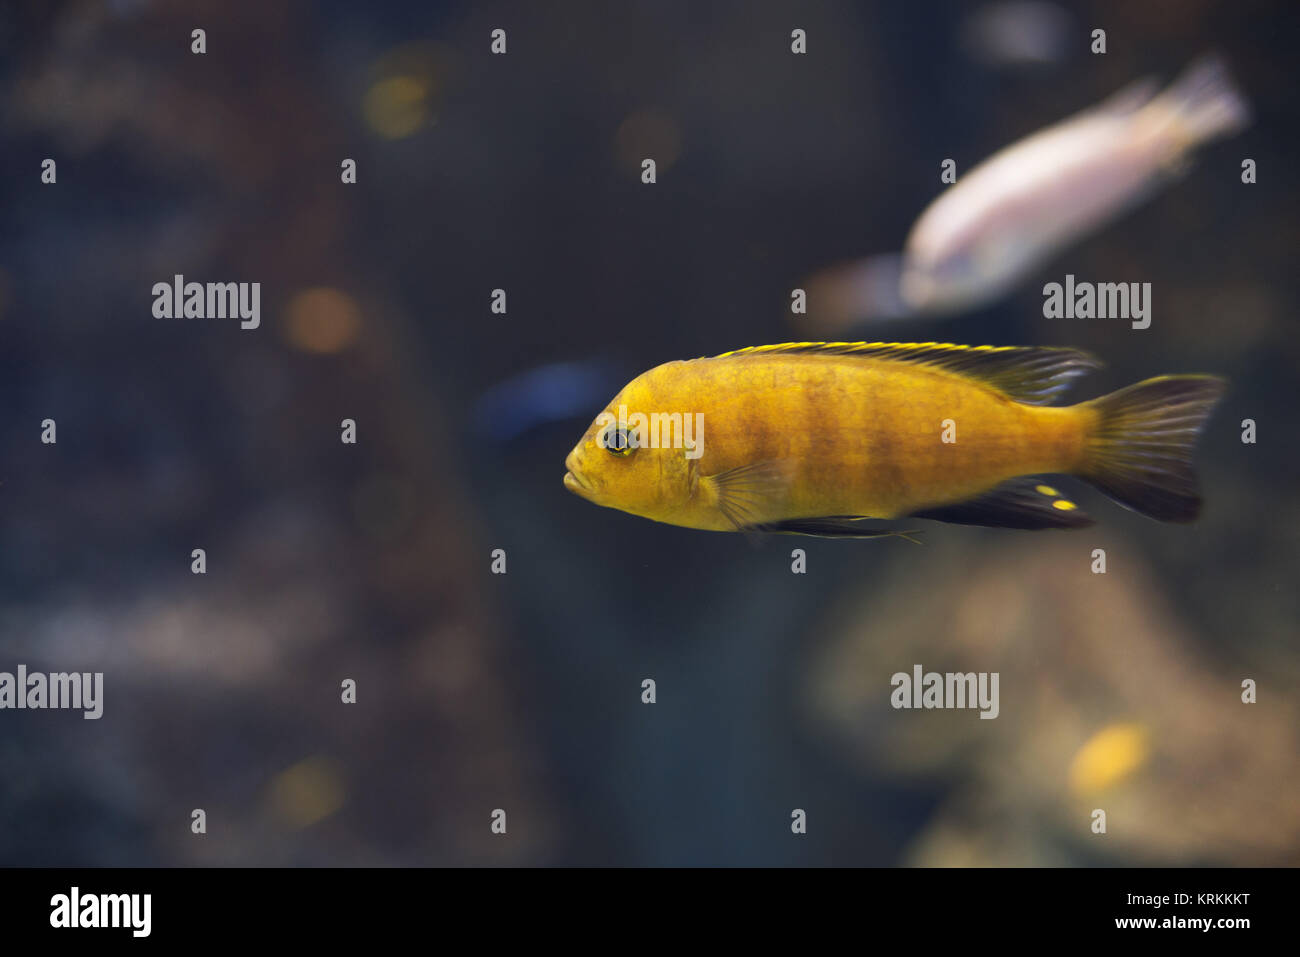 close up on yellow labidochromis caeruleus cichlid fish malawi Stock Photo